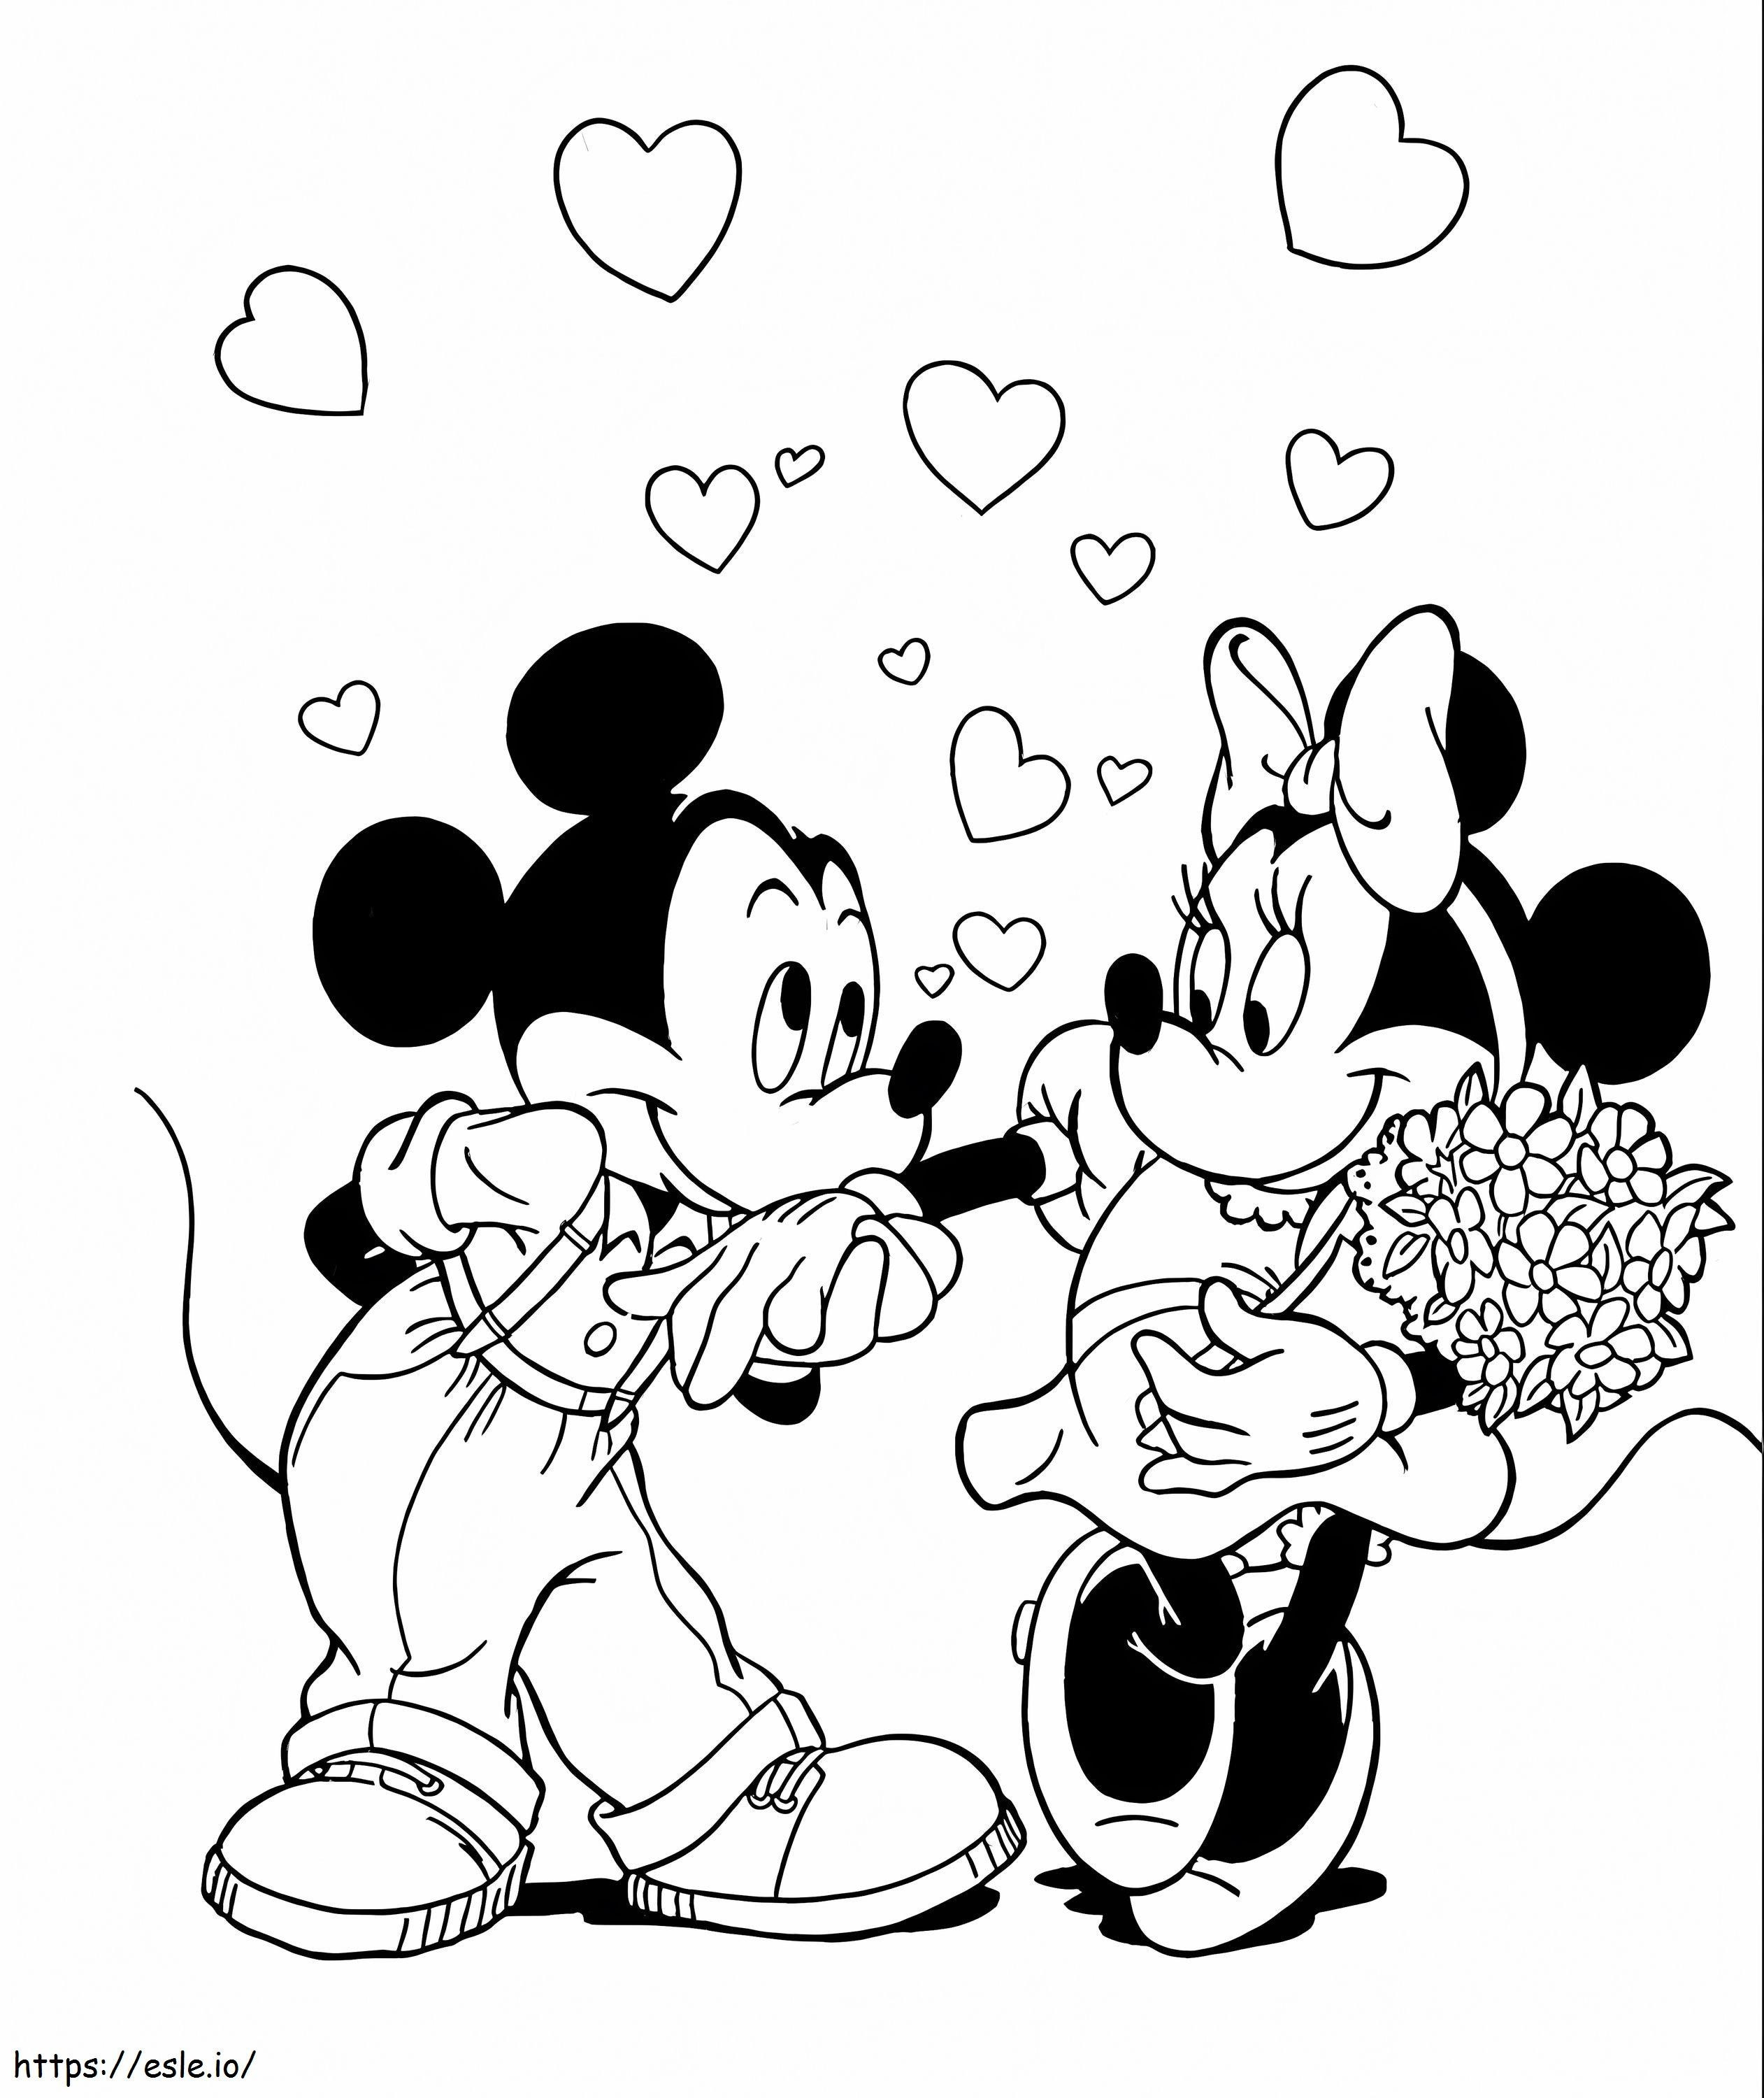 Topolino e Minnie sorridono con in mano un mazzo di fiori da colorare